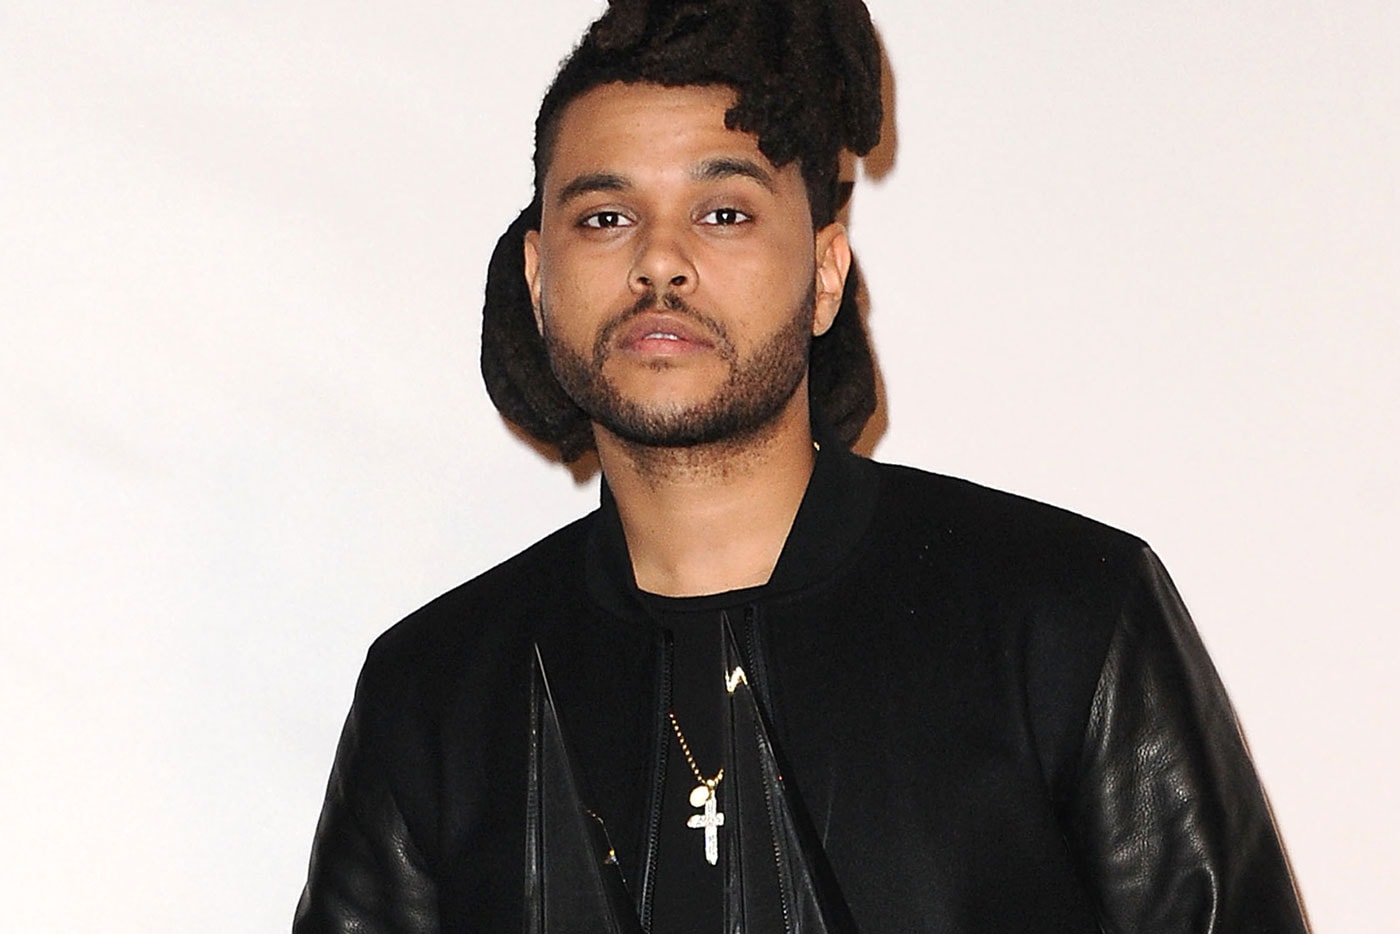 Watch The Weeknd’s Lollapalooza 2015 Set